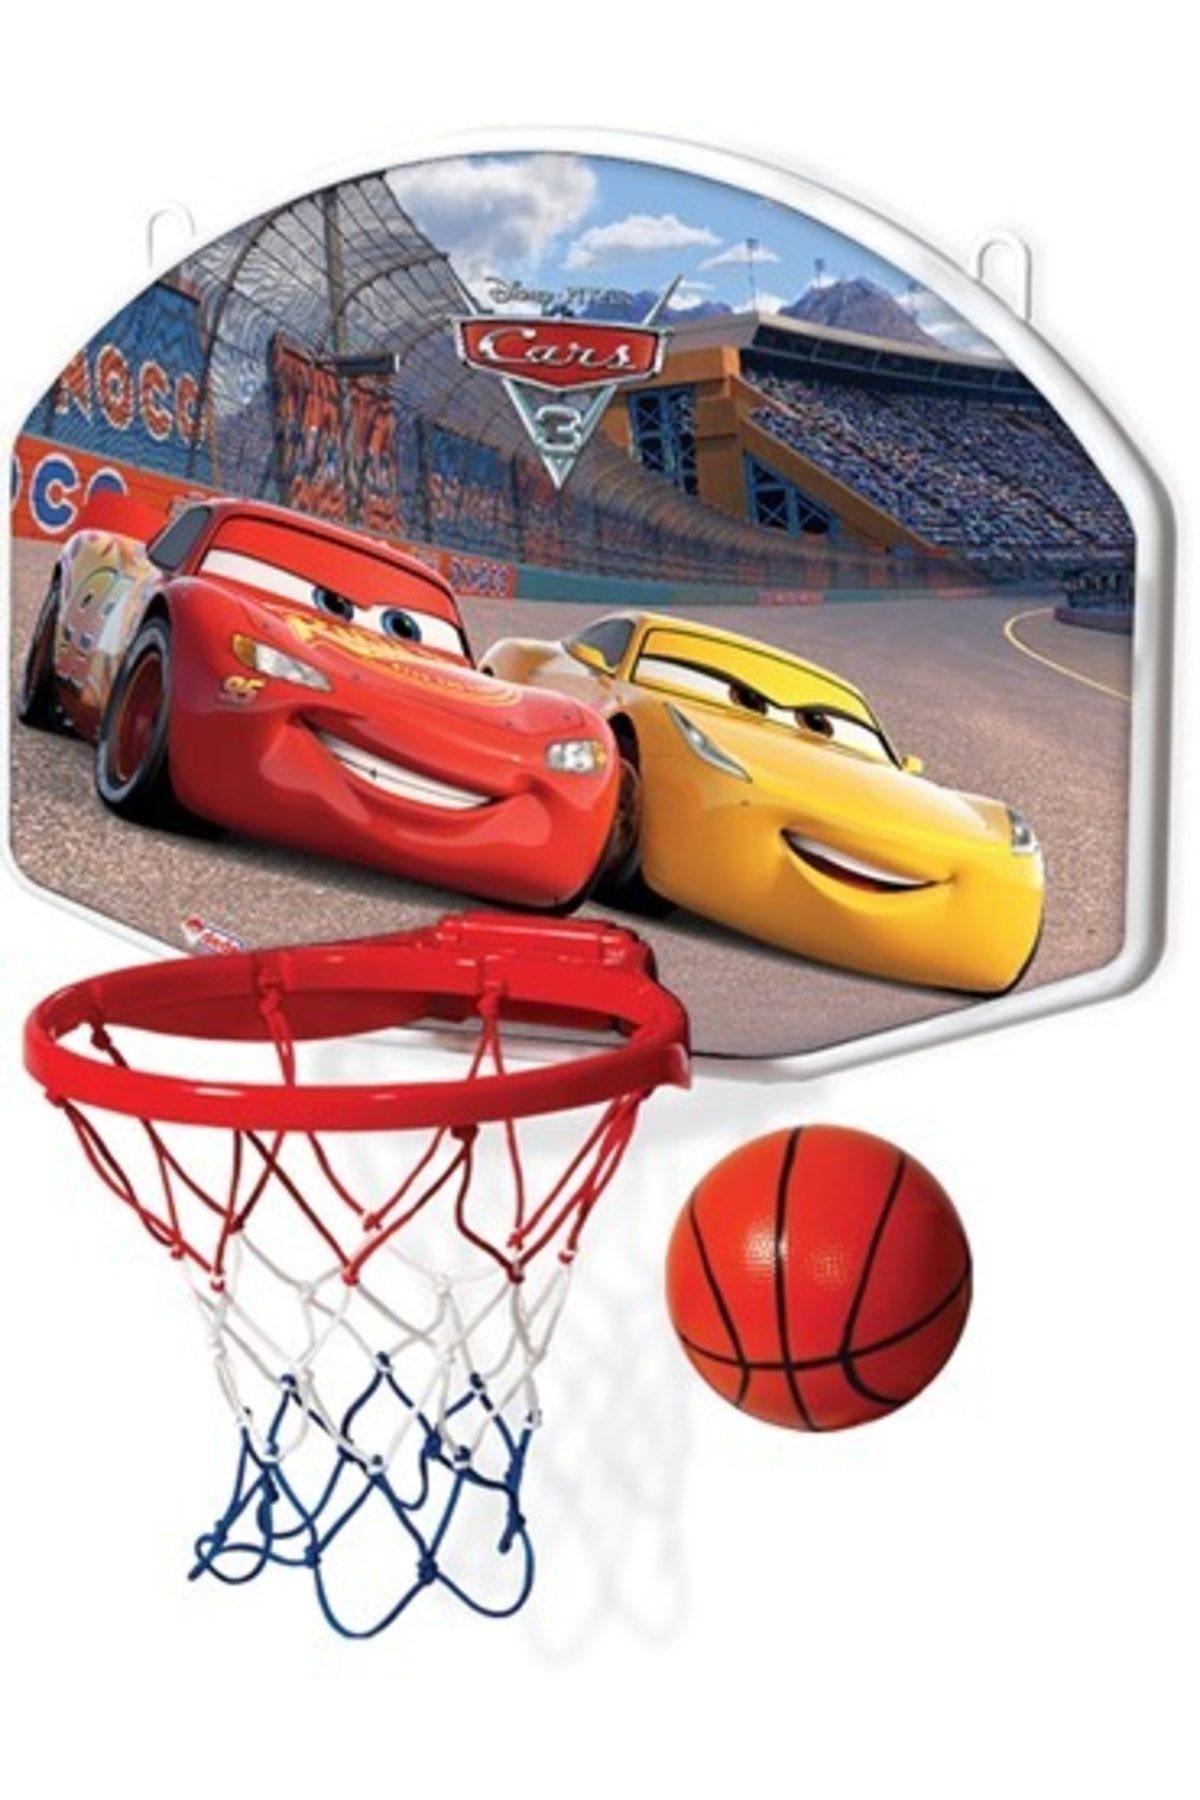 Cars Basket Potası Büyük 01529